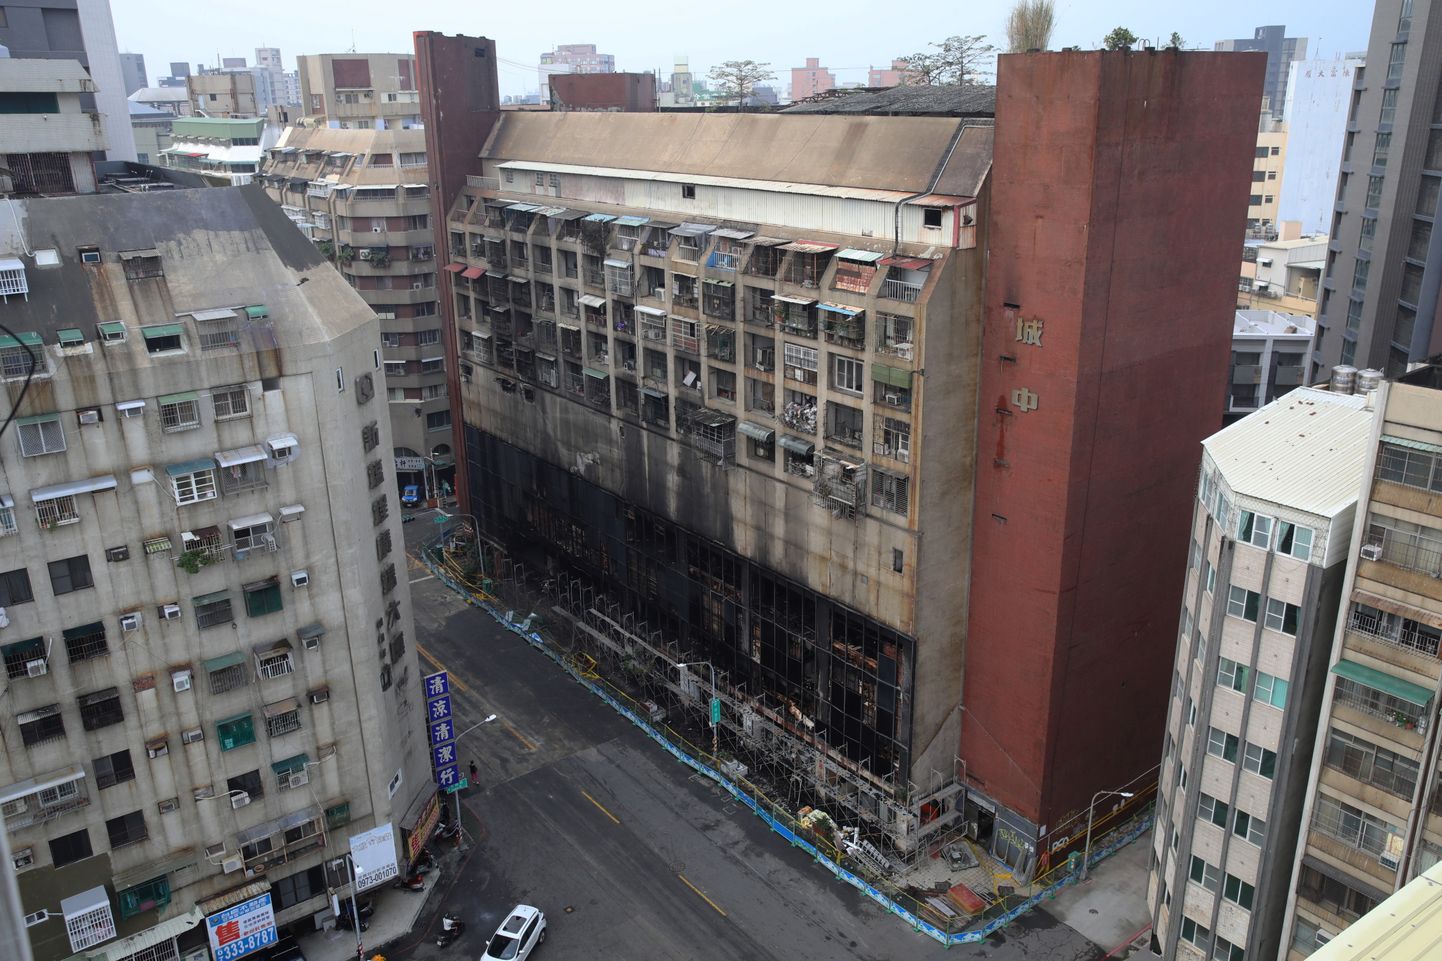 Põlenud korrusmaja Kaohsiungi linnas.